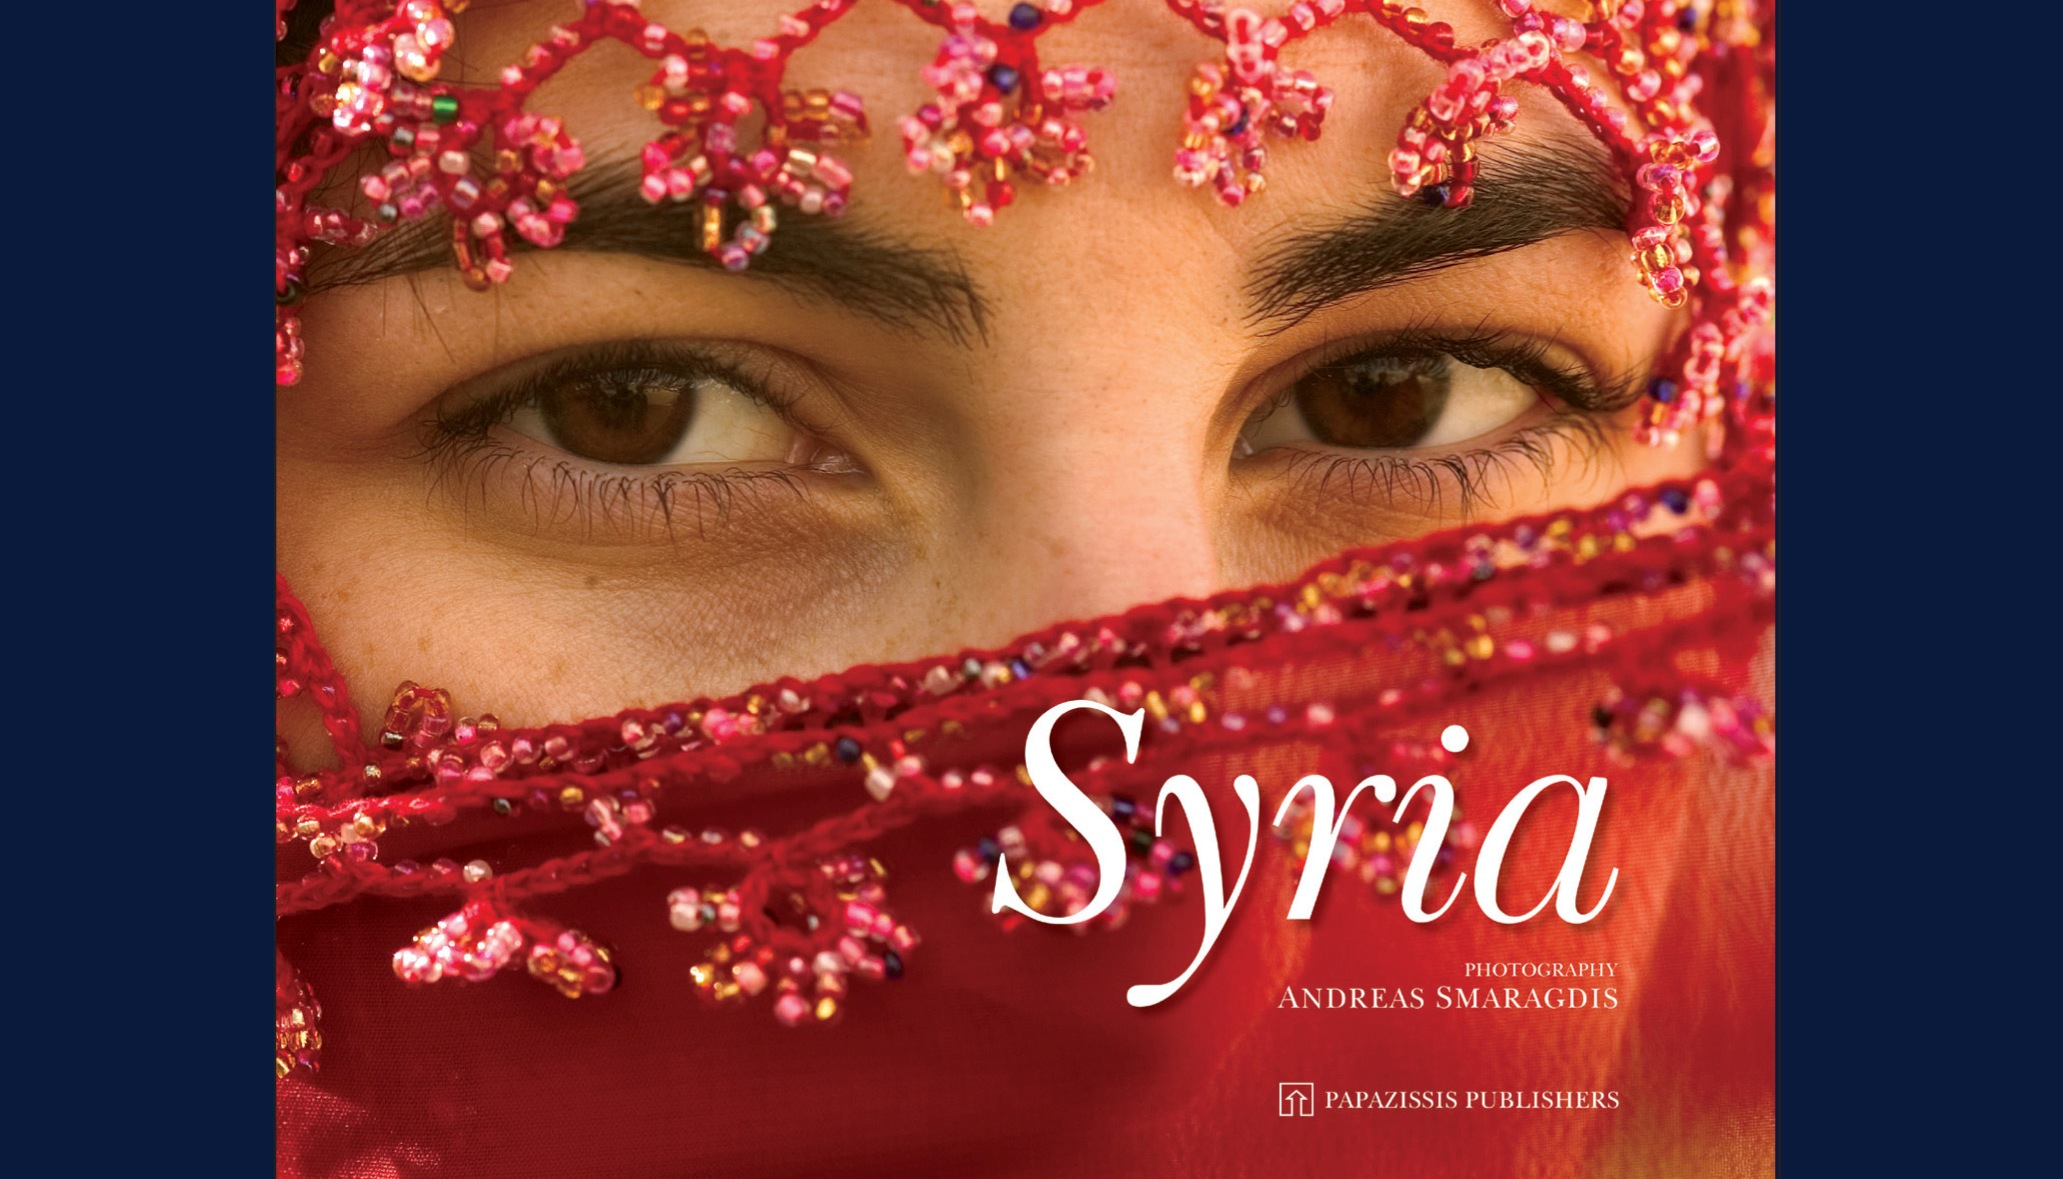 Παρουσίαση του φωτογραφικού λευκώματος “Συρία” του Ανδρέα Σμαραγδή